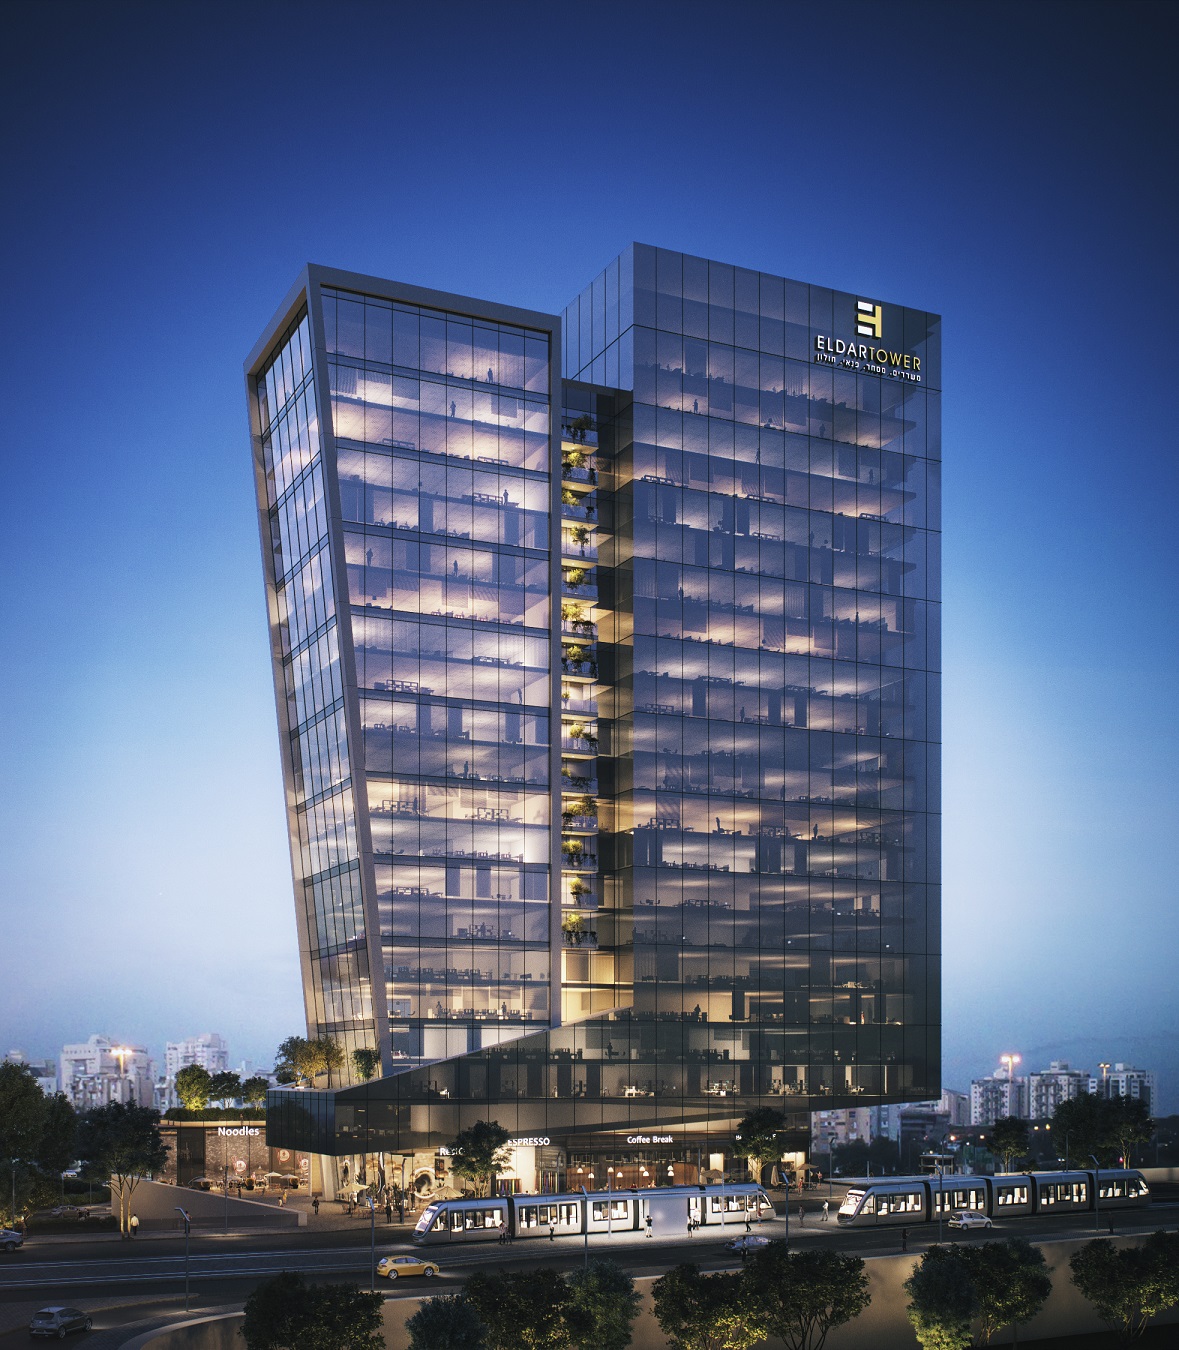 אלדר השקעות תקים מגדל משרדים של 22 קומות בפארק העסקים החדש של חולון